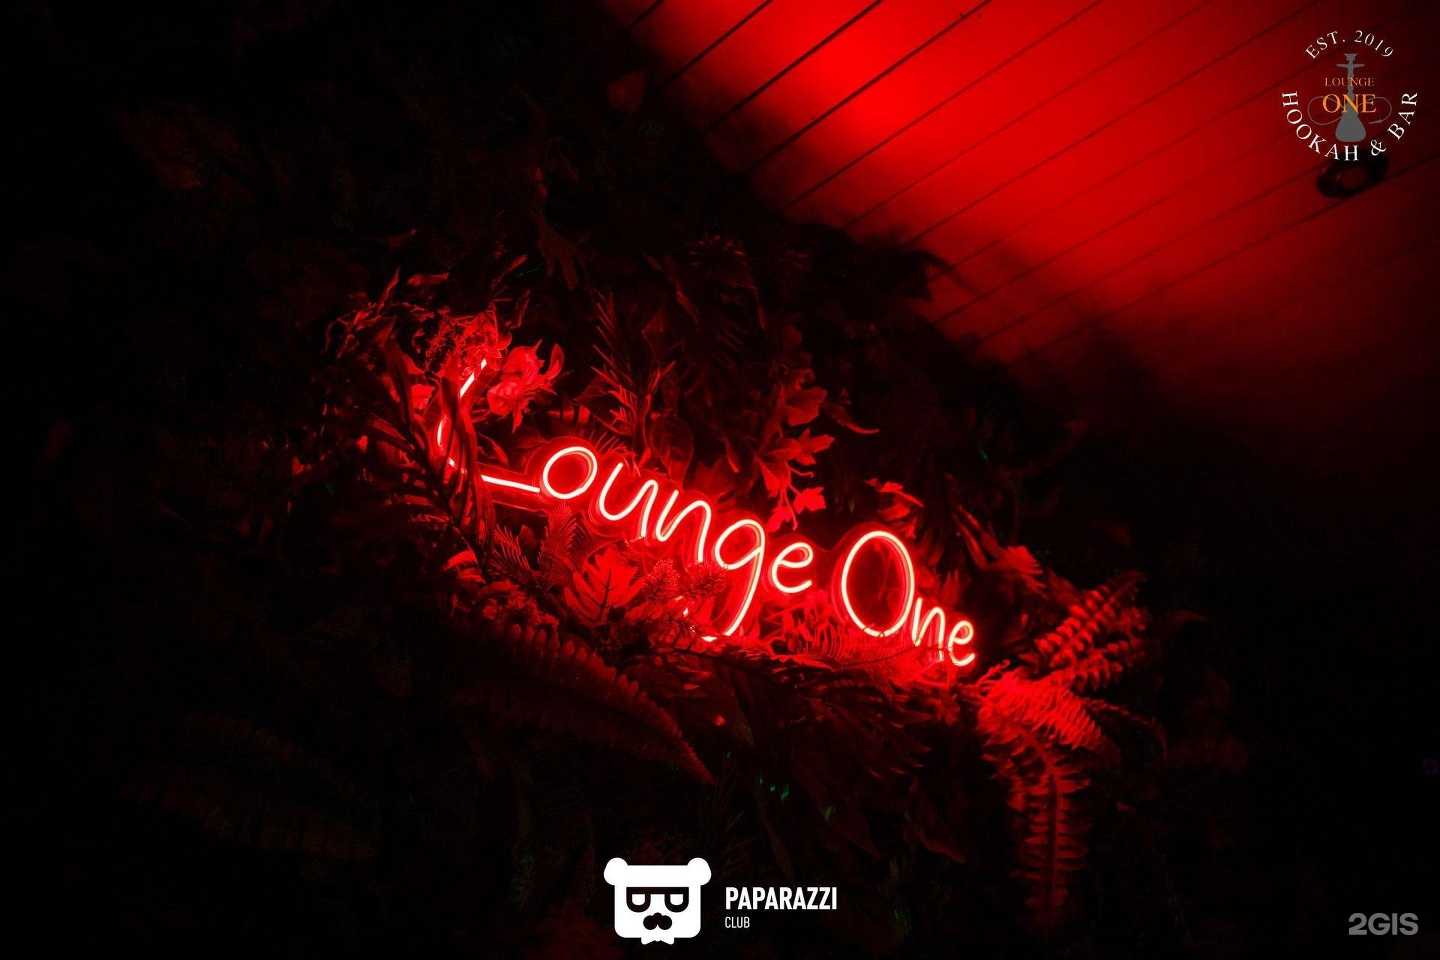 лаундж-бар Lounge one фото 1